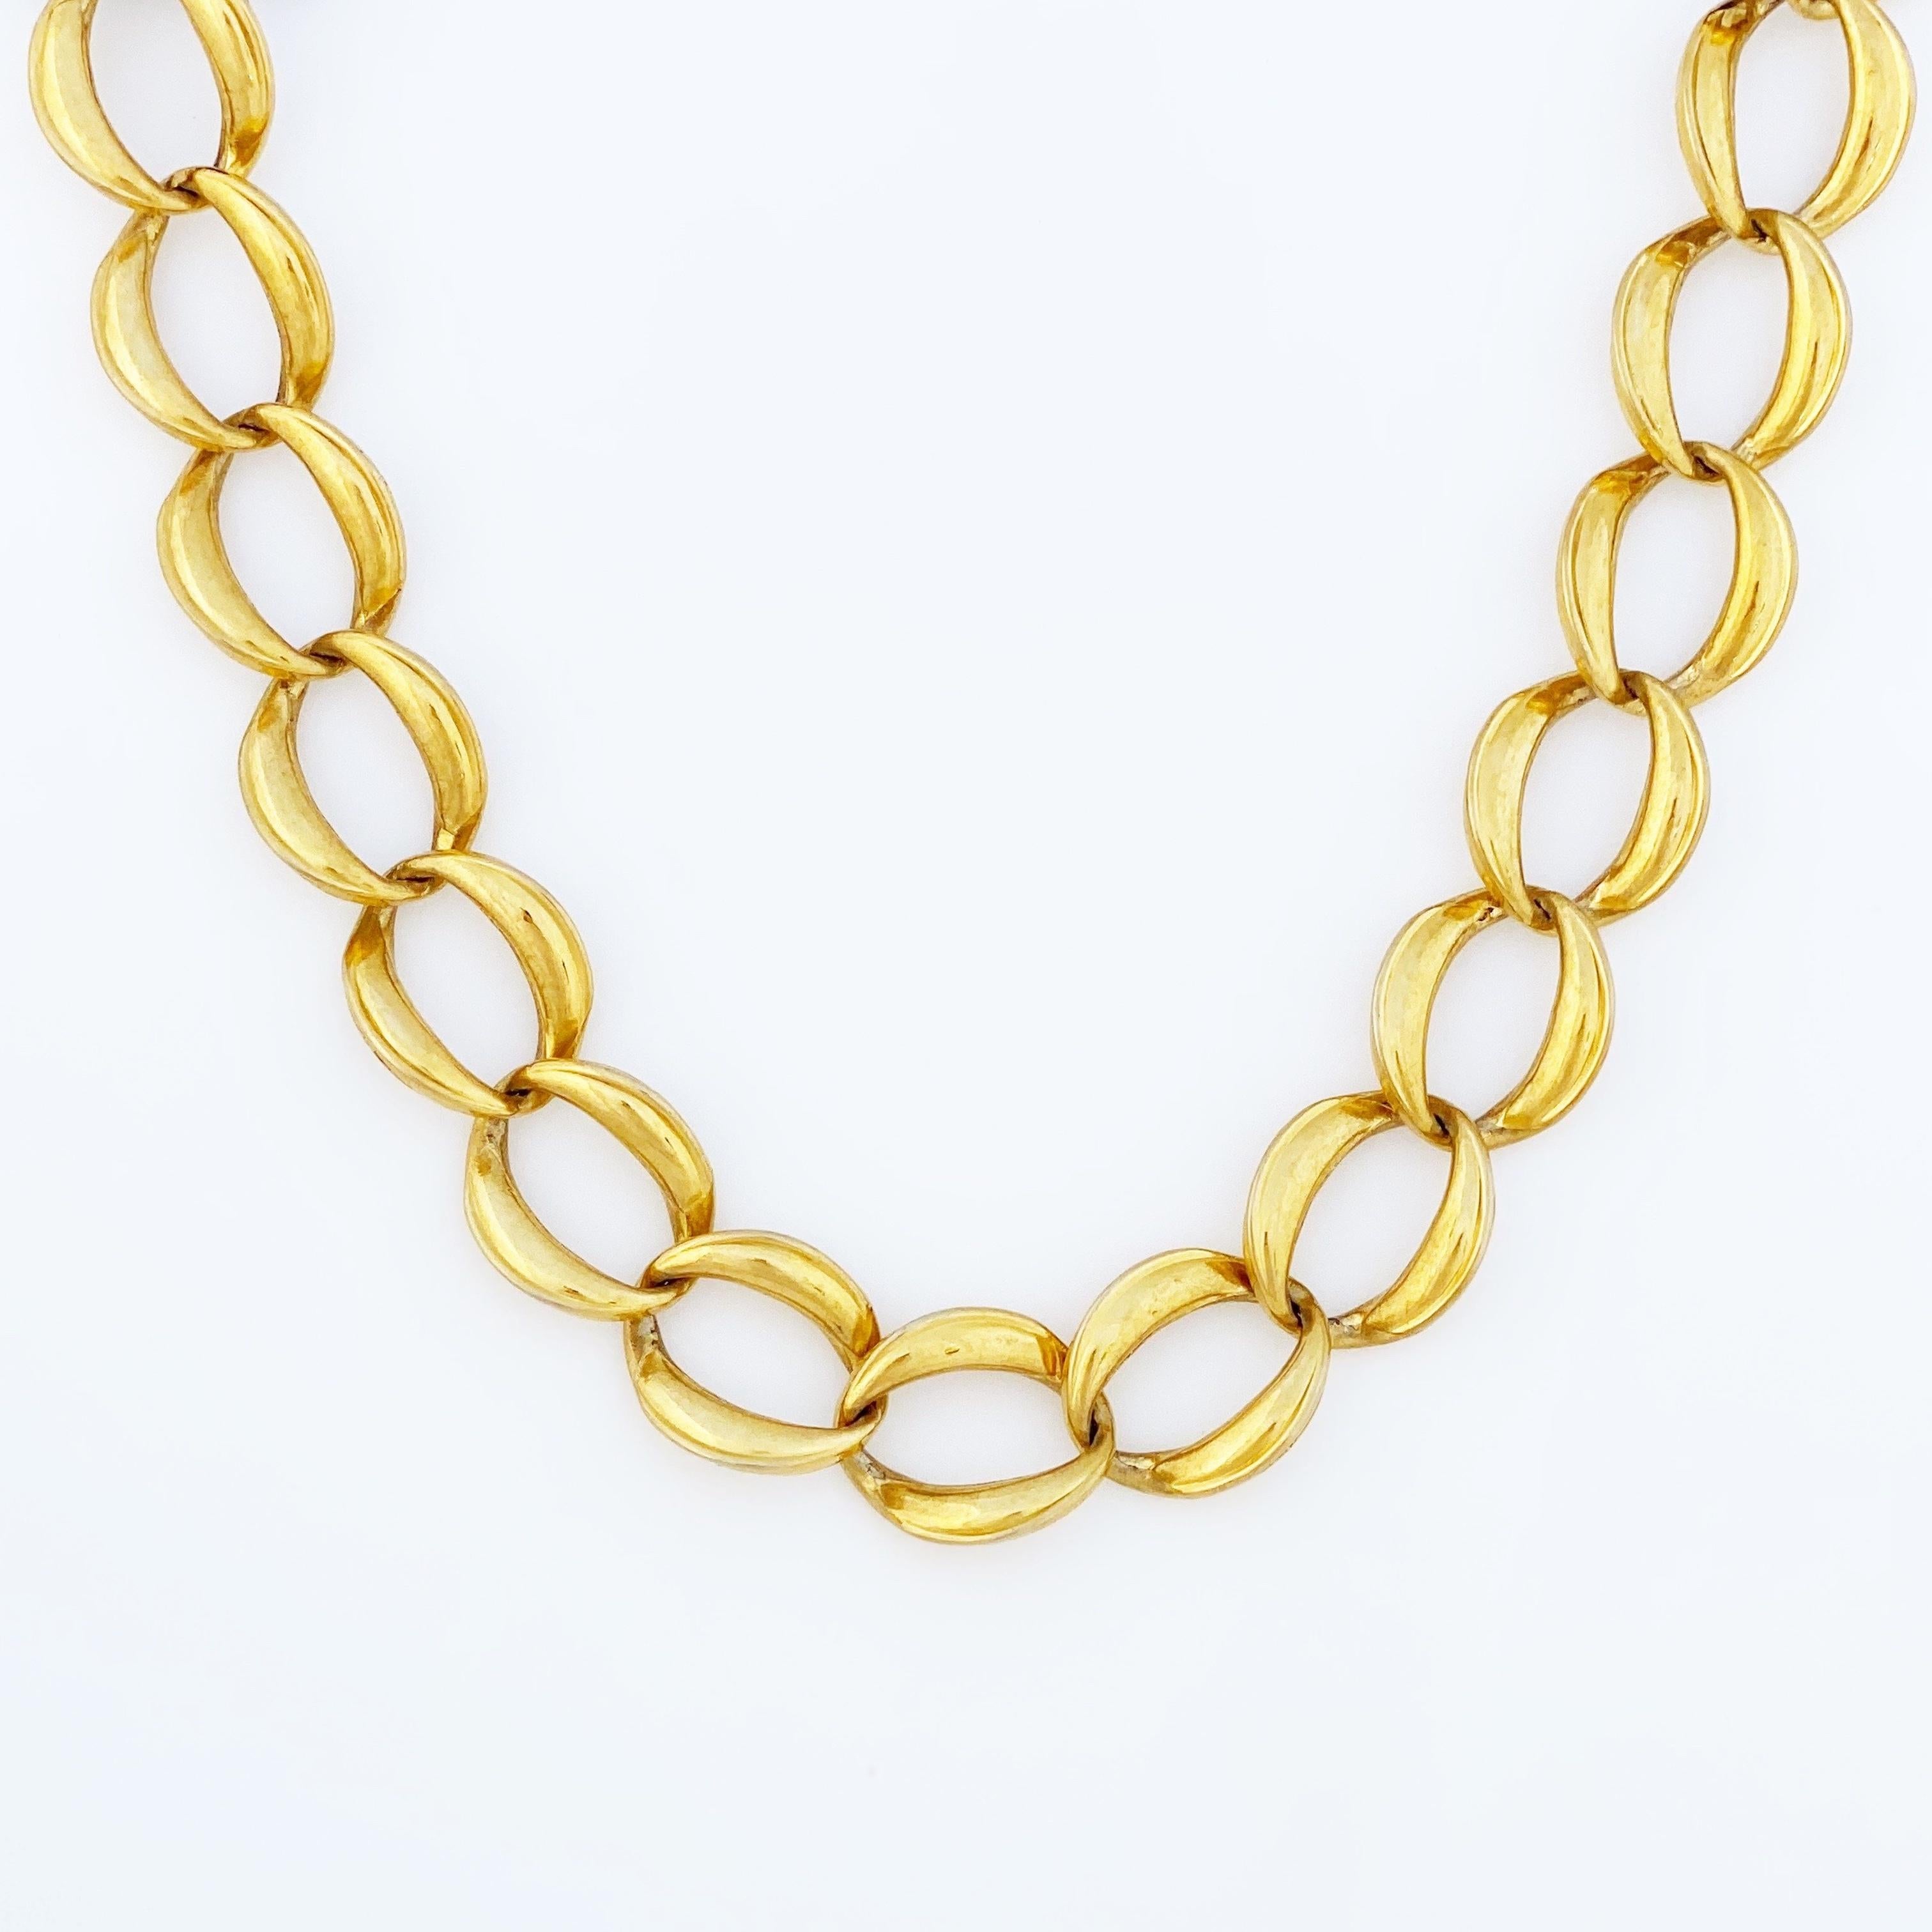 anne klein gold necklace vintage